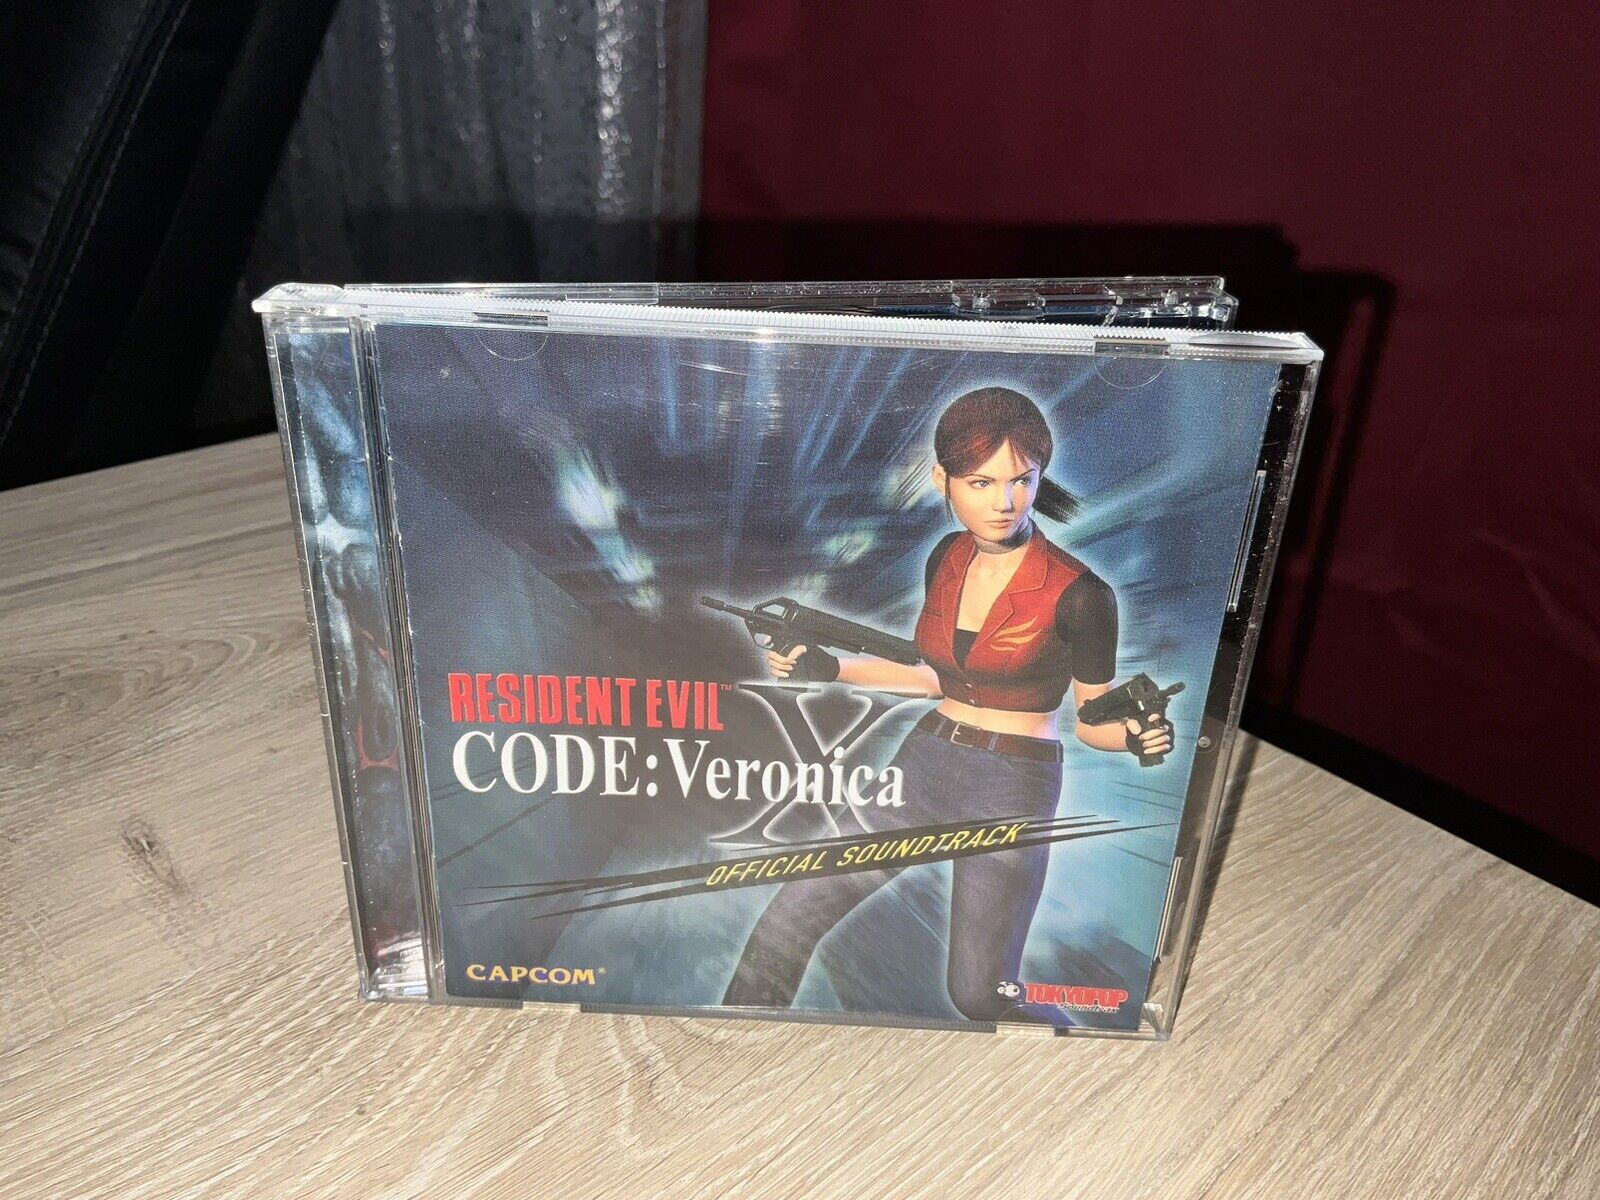 Resident Evil - Code: Veronica Official Soundtrack CD Capcom Dreamcast